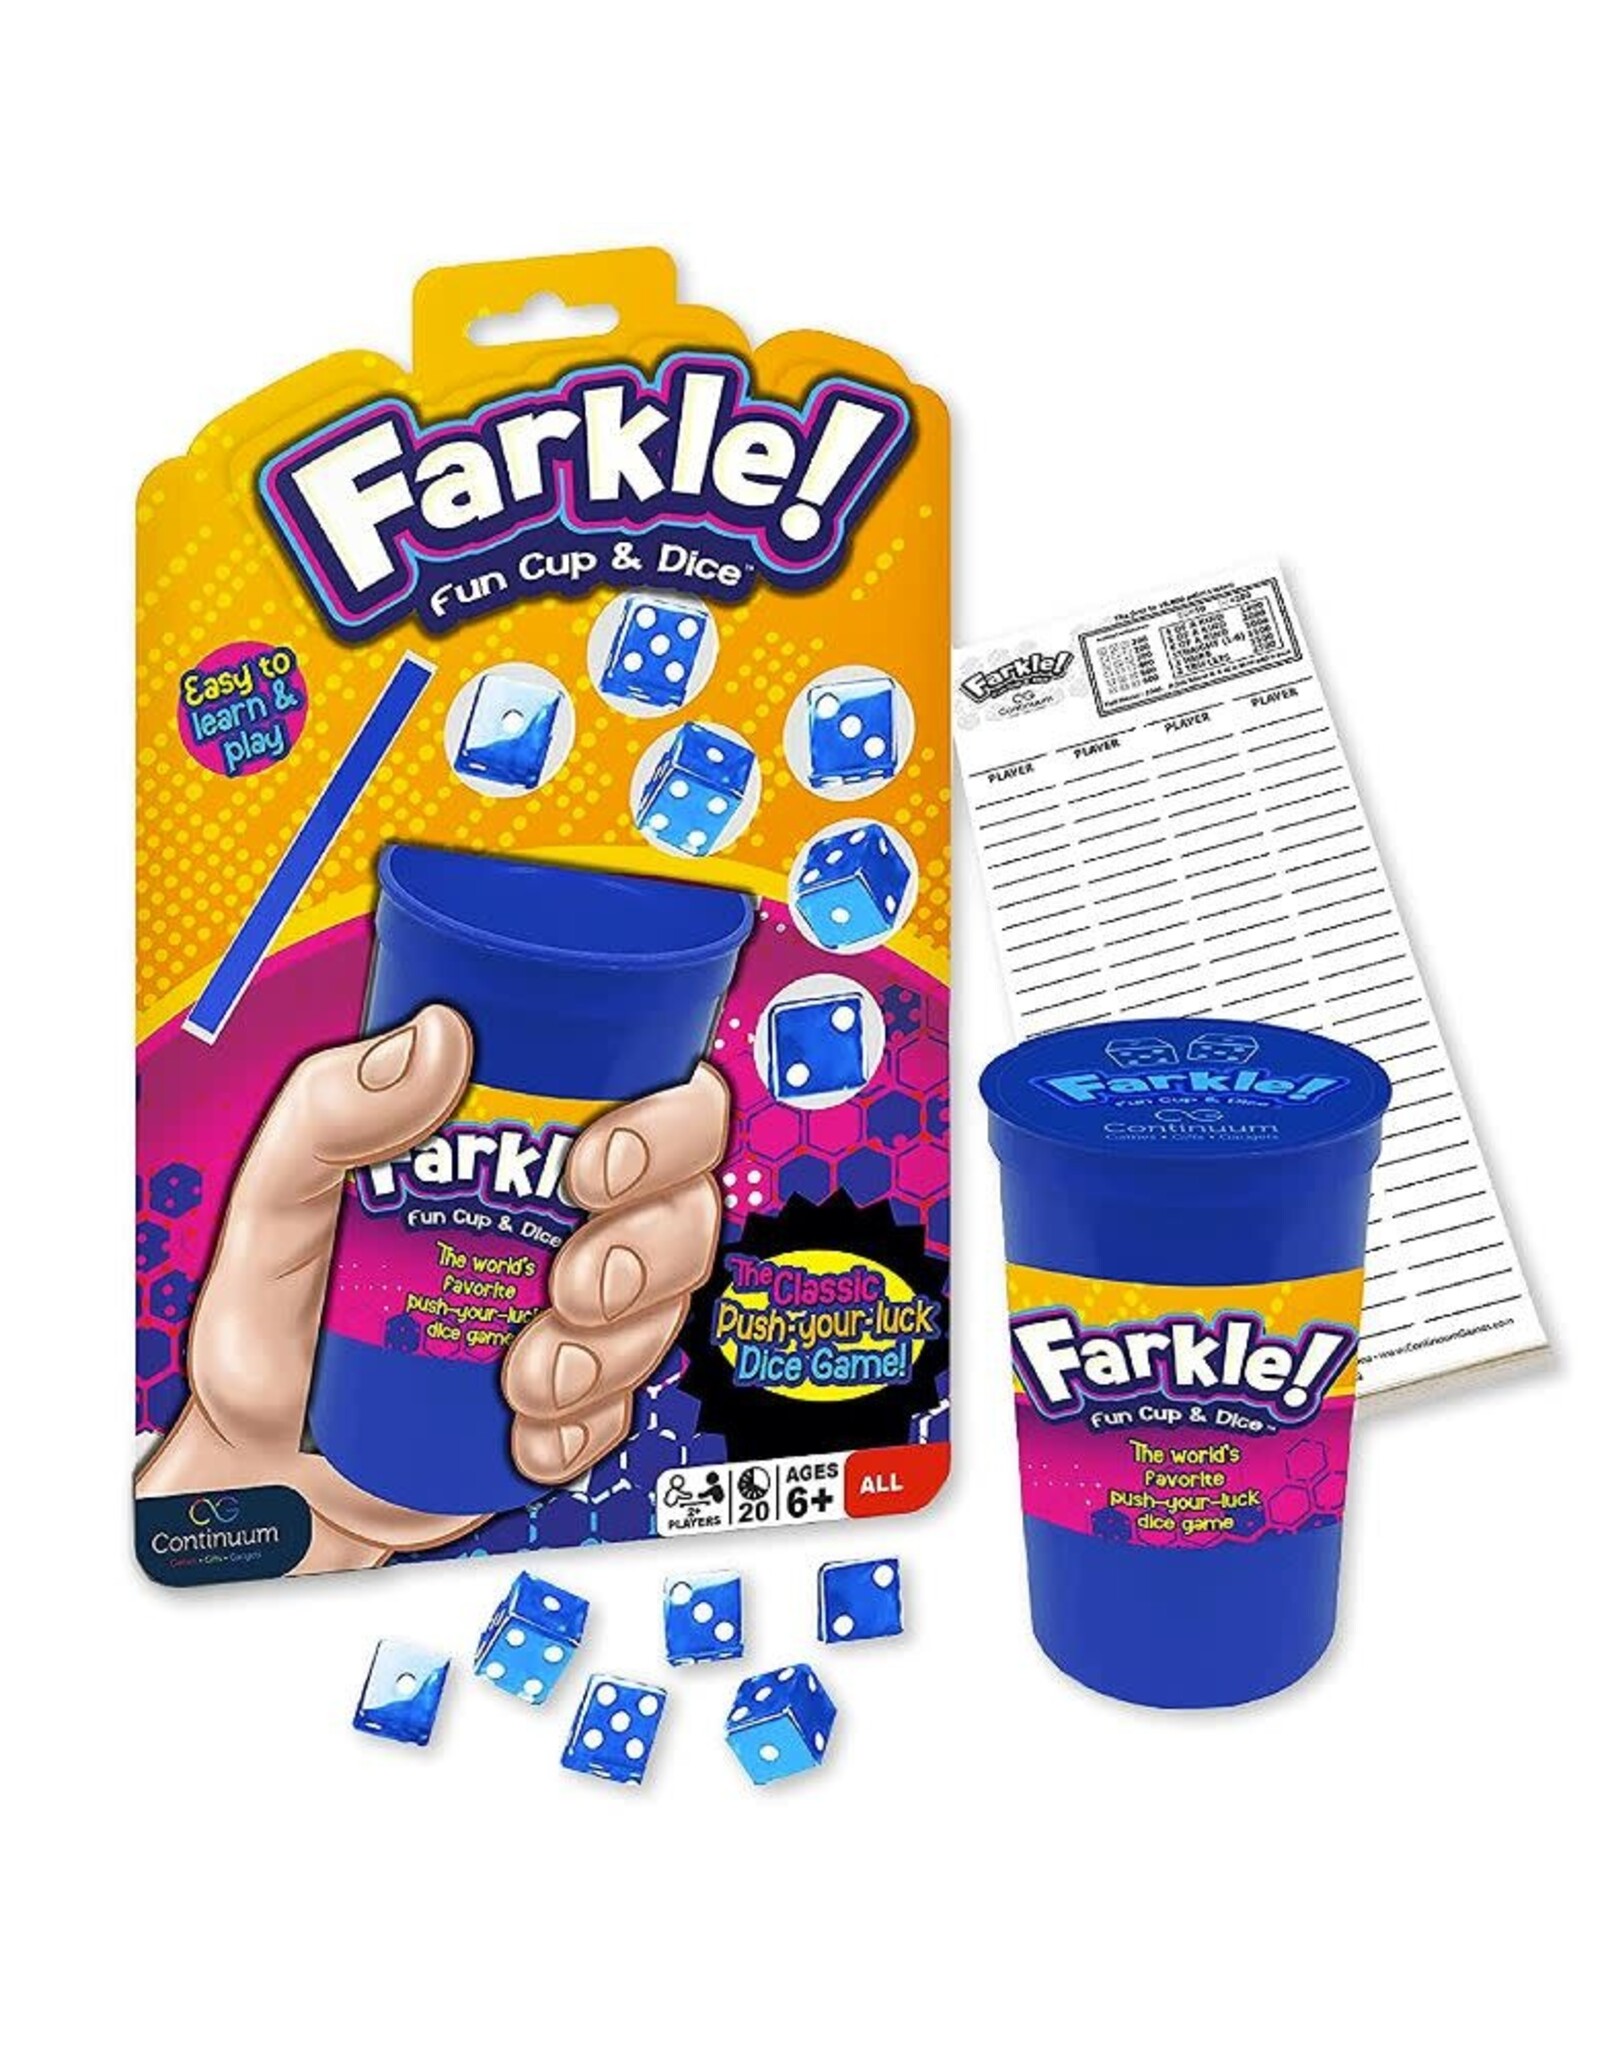 Farkle! Fun Cup & Dice - FS